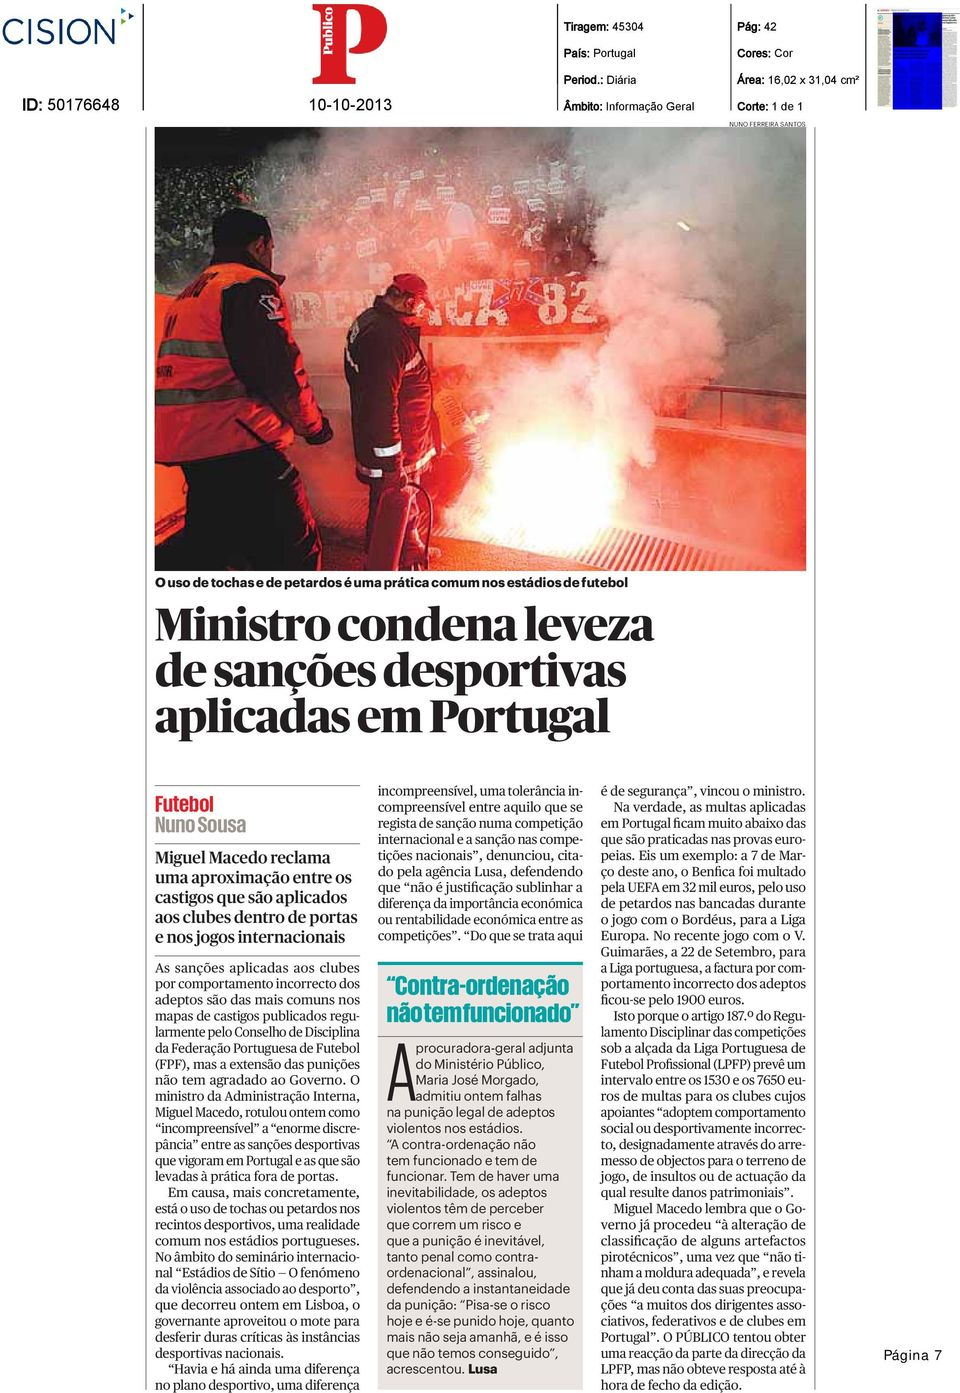 condena leveza de sanções desportivas aplicadas em Portugal Futebol Nuno Sousa Miguel Macedo reclama uma aproximação entre os castigos que são aplicados aos clubes dentro de portas e nos jogos